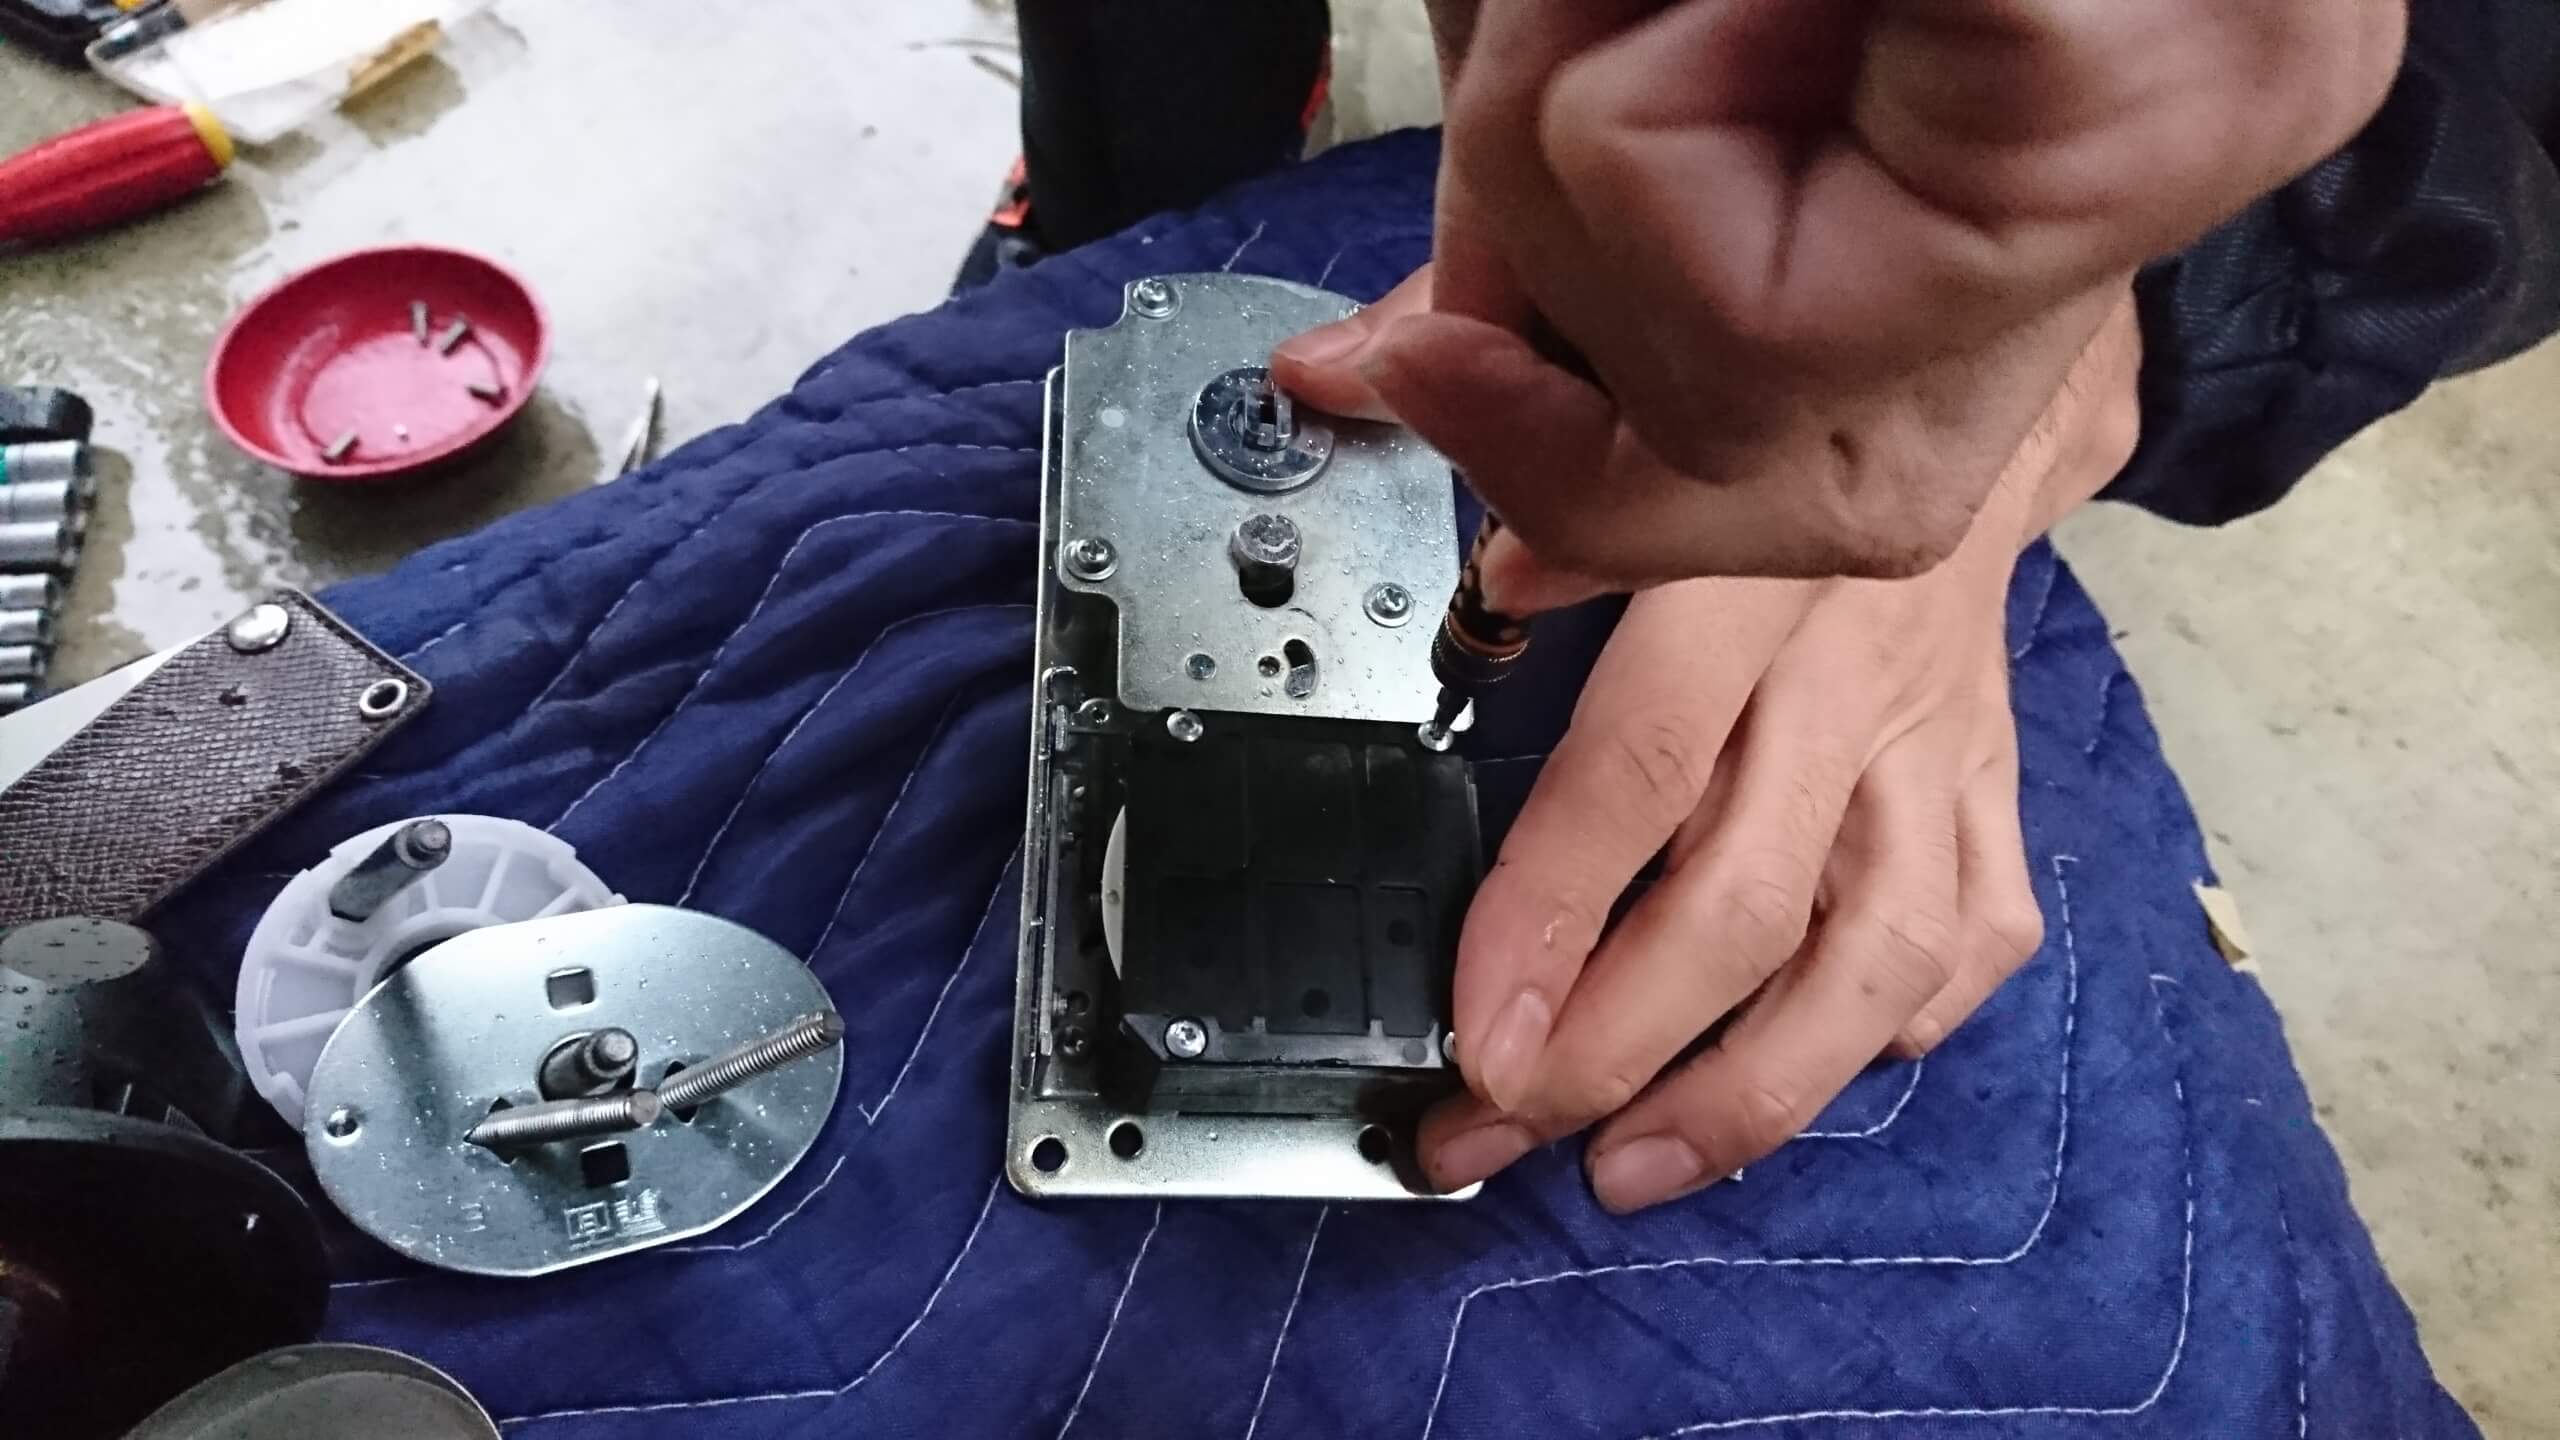 シャーロック製の錠前の分解修理に対応する鍵屋